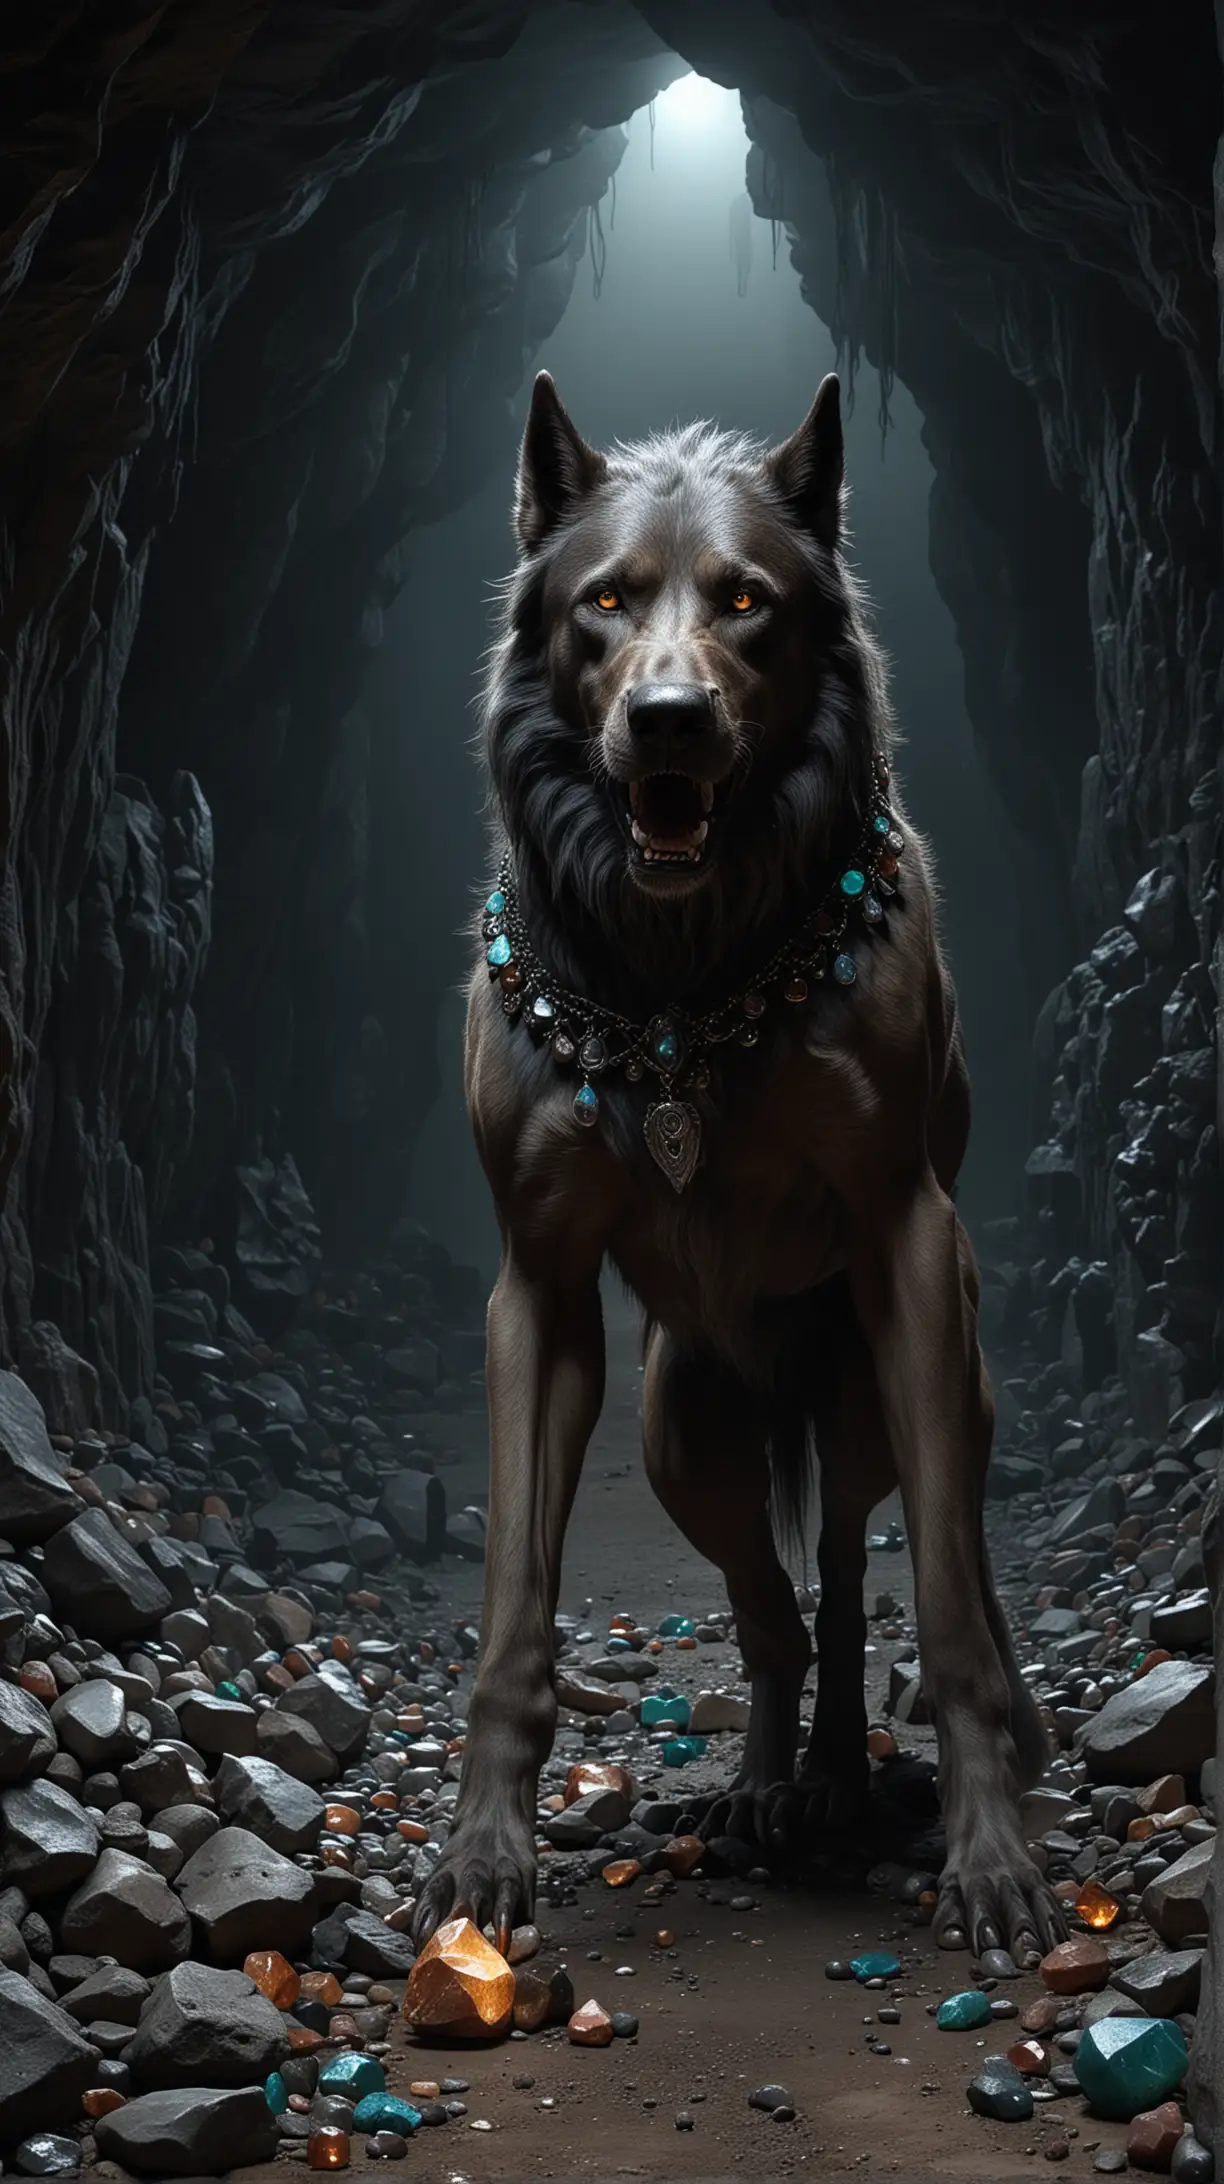 Psoglav Werewolf in Gemstone Cave at Night